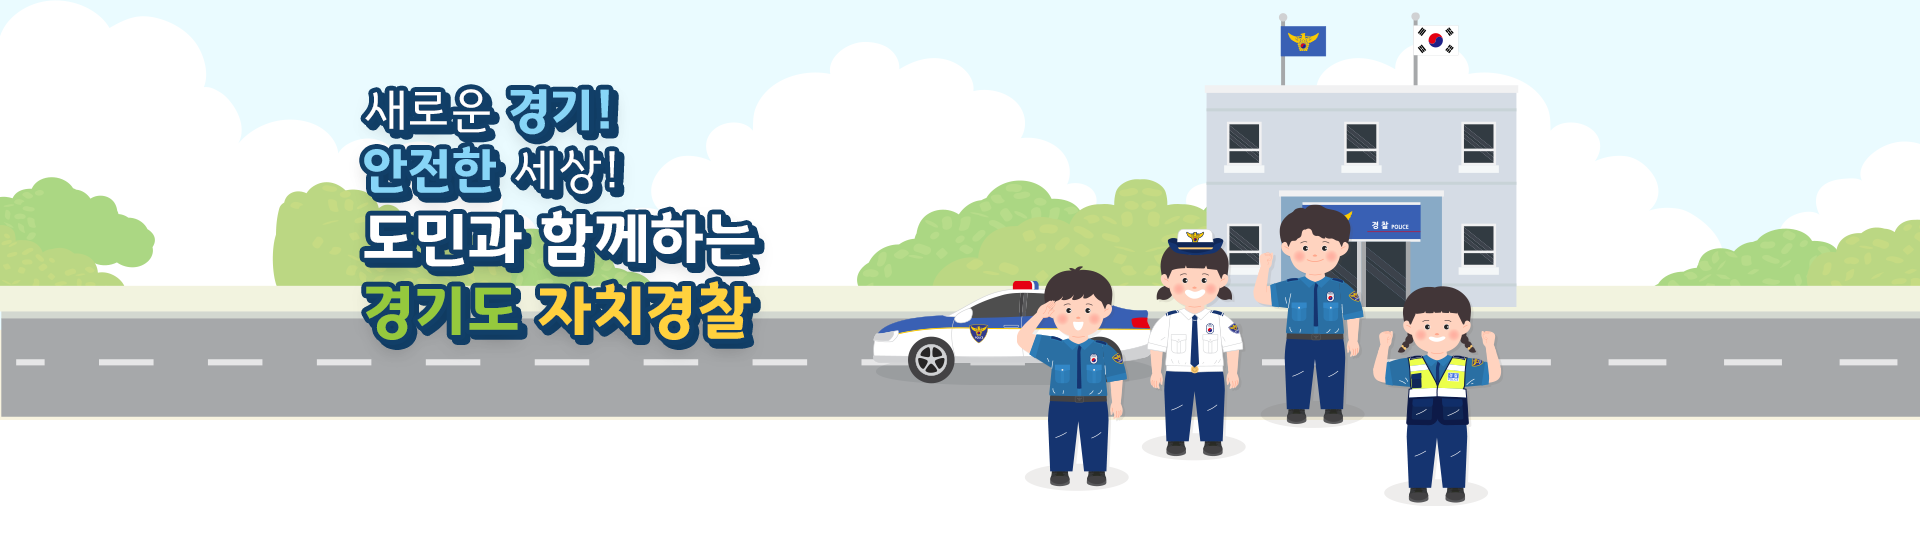 새로운 경기! 안전한 세상! 도민과 함께하는 경기도 자치경찰